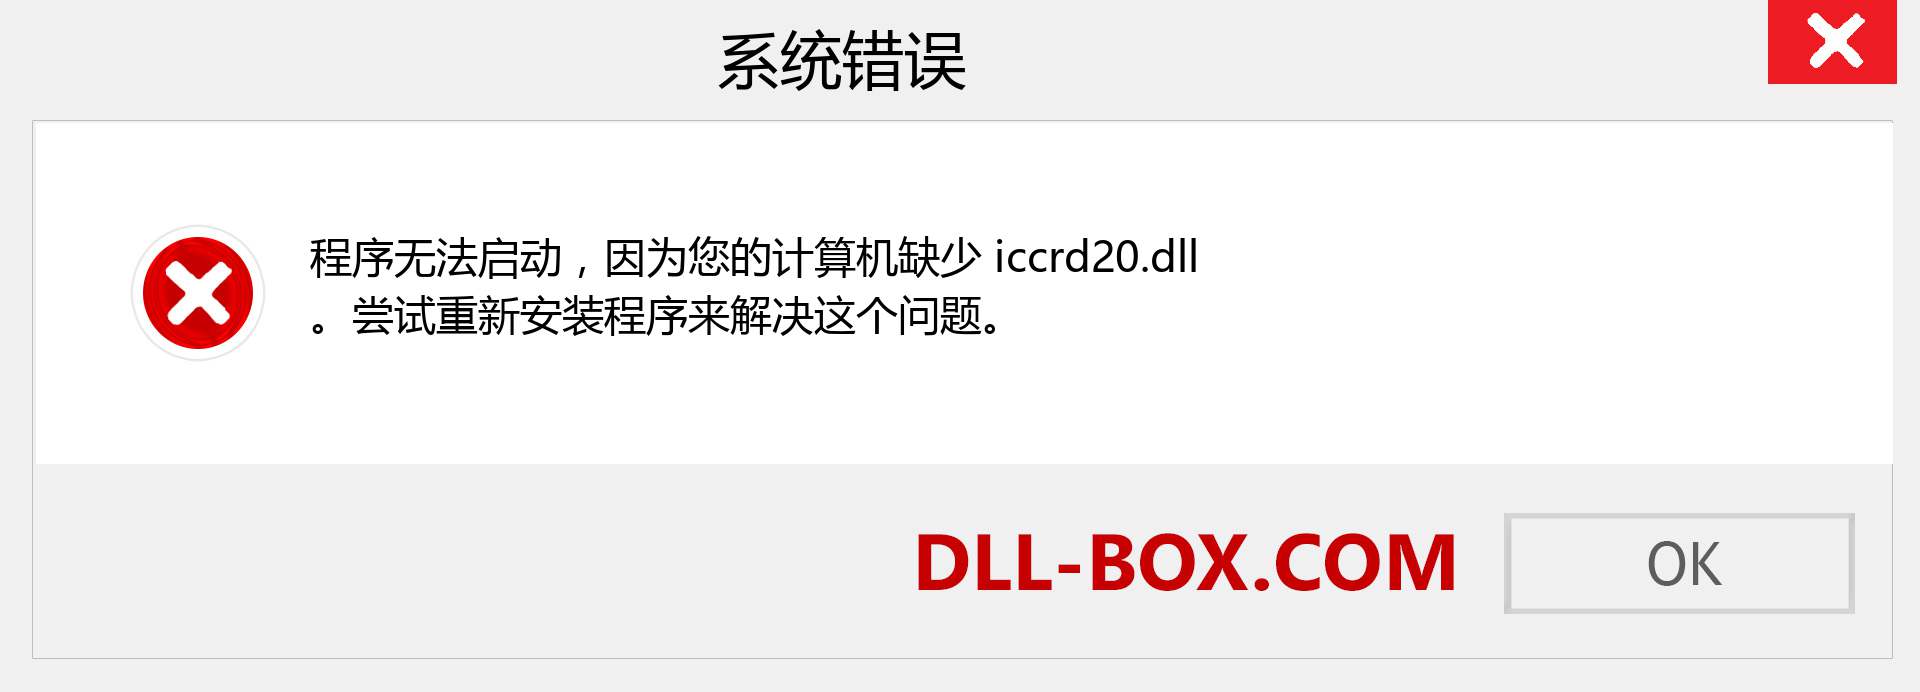 iccrd20.dll 文件丢失？。 适用于 Windows 7、8、10 的下载 - 修复 Windows、照片、图像上的 iccrd20 dll 丢失错误